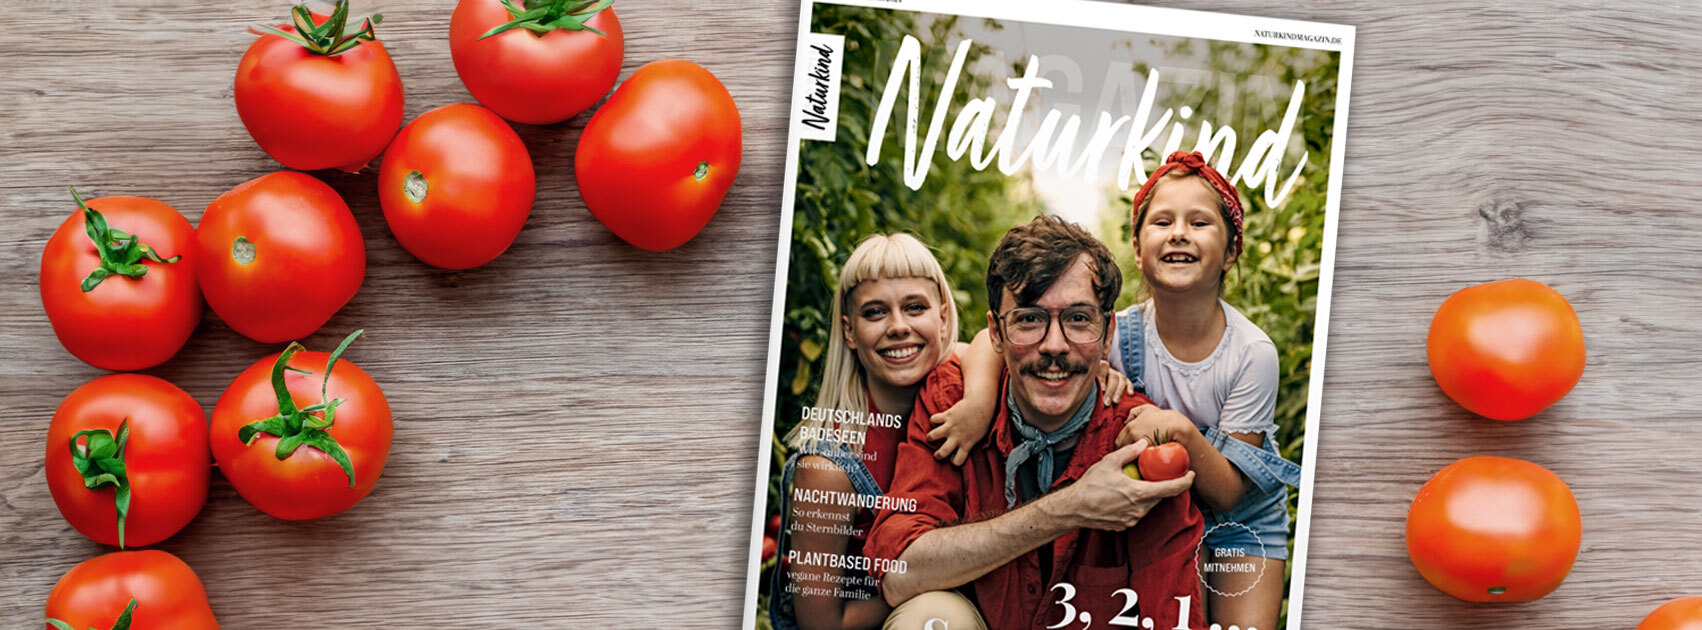 Naturkind Magazin Aktuelle Ausgabe